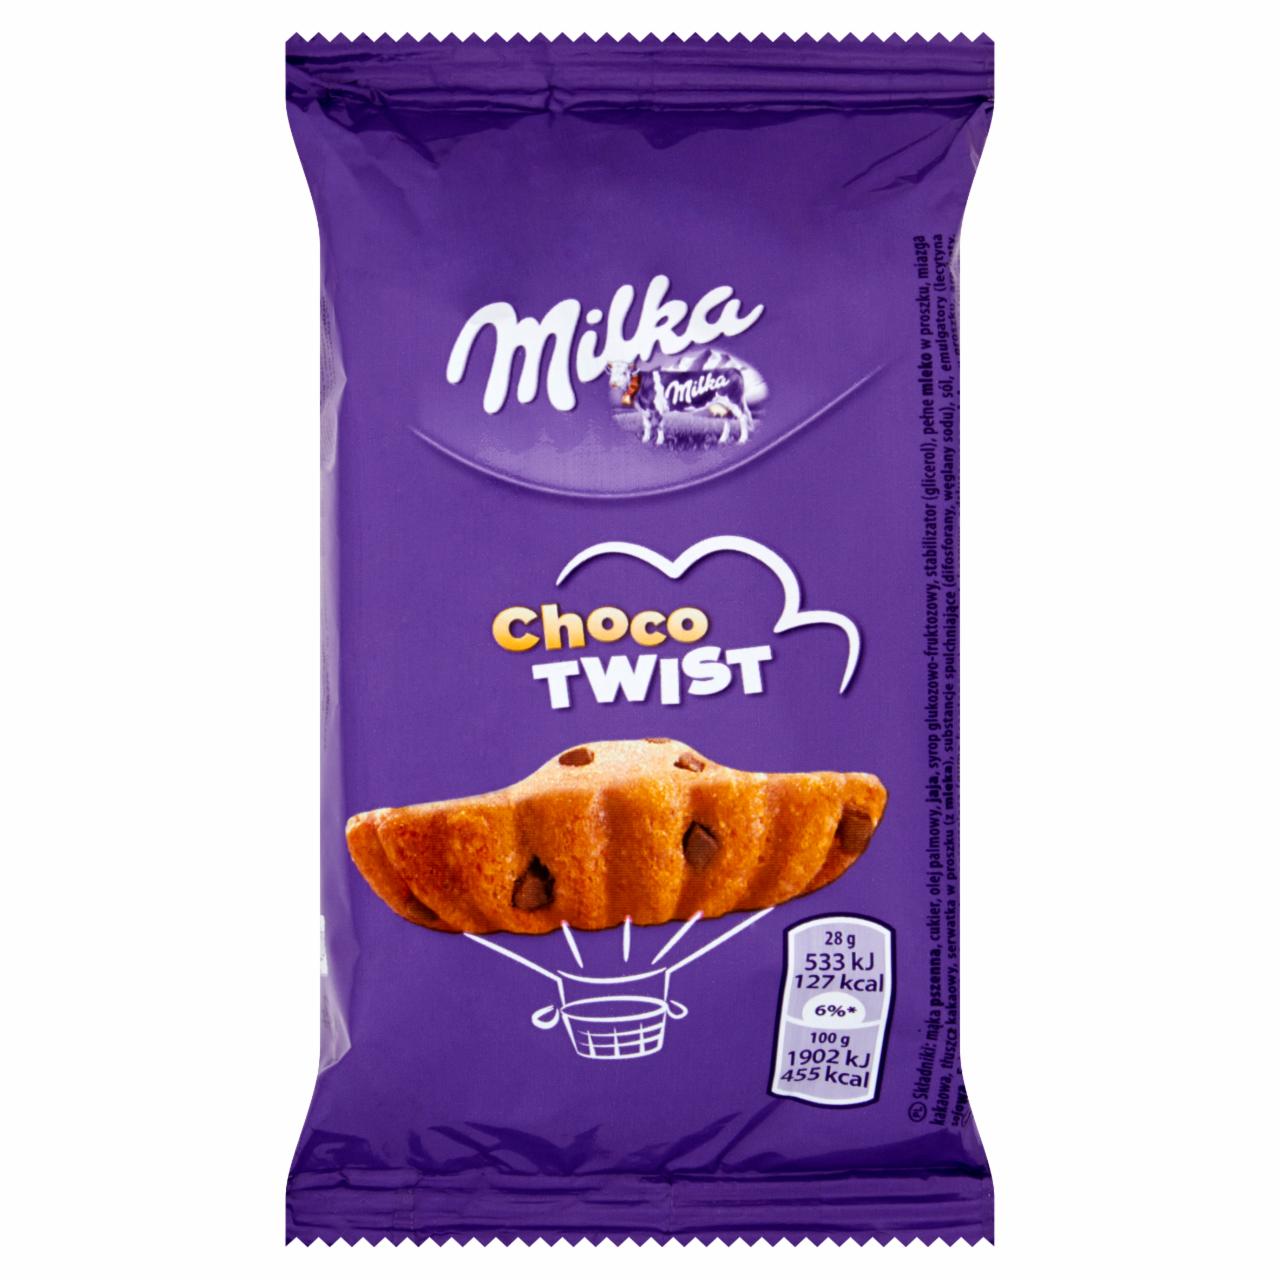 Zdjęcia - Milka Choco Twist Ciastko biszkoptowe z kawałkami czekolady mlecznej 28 g